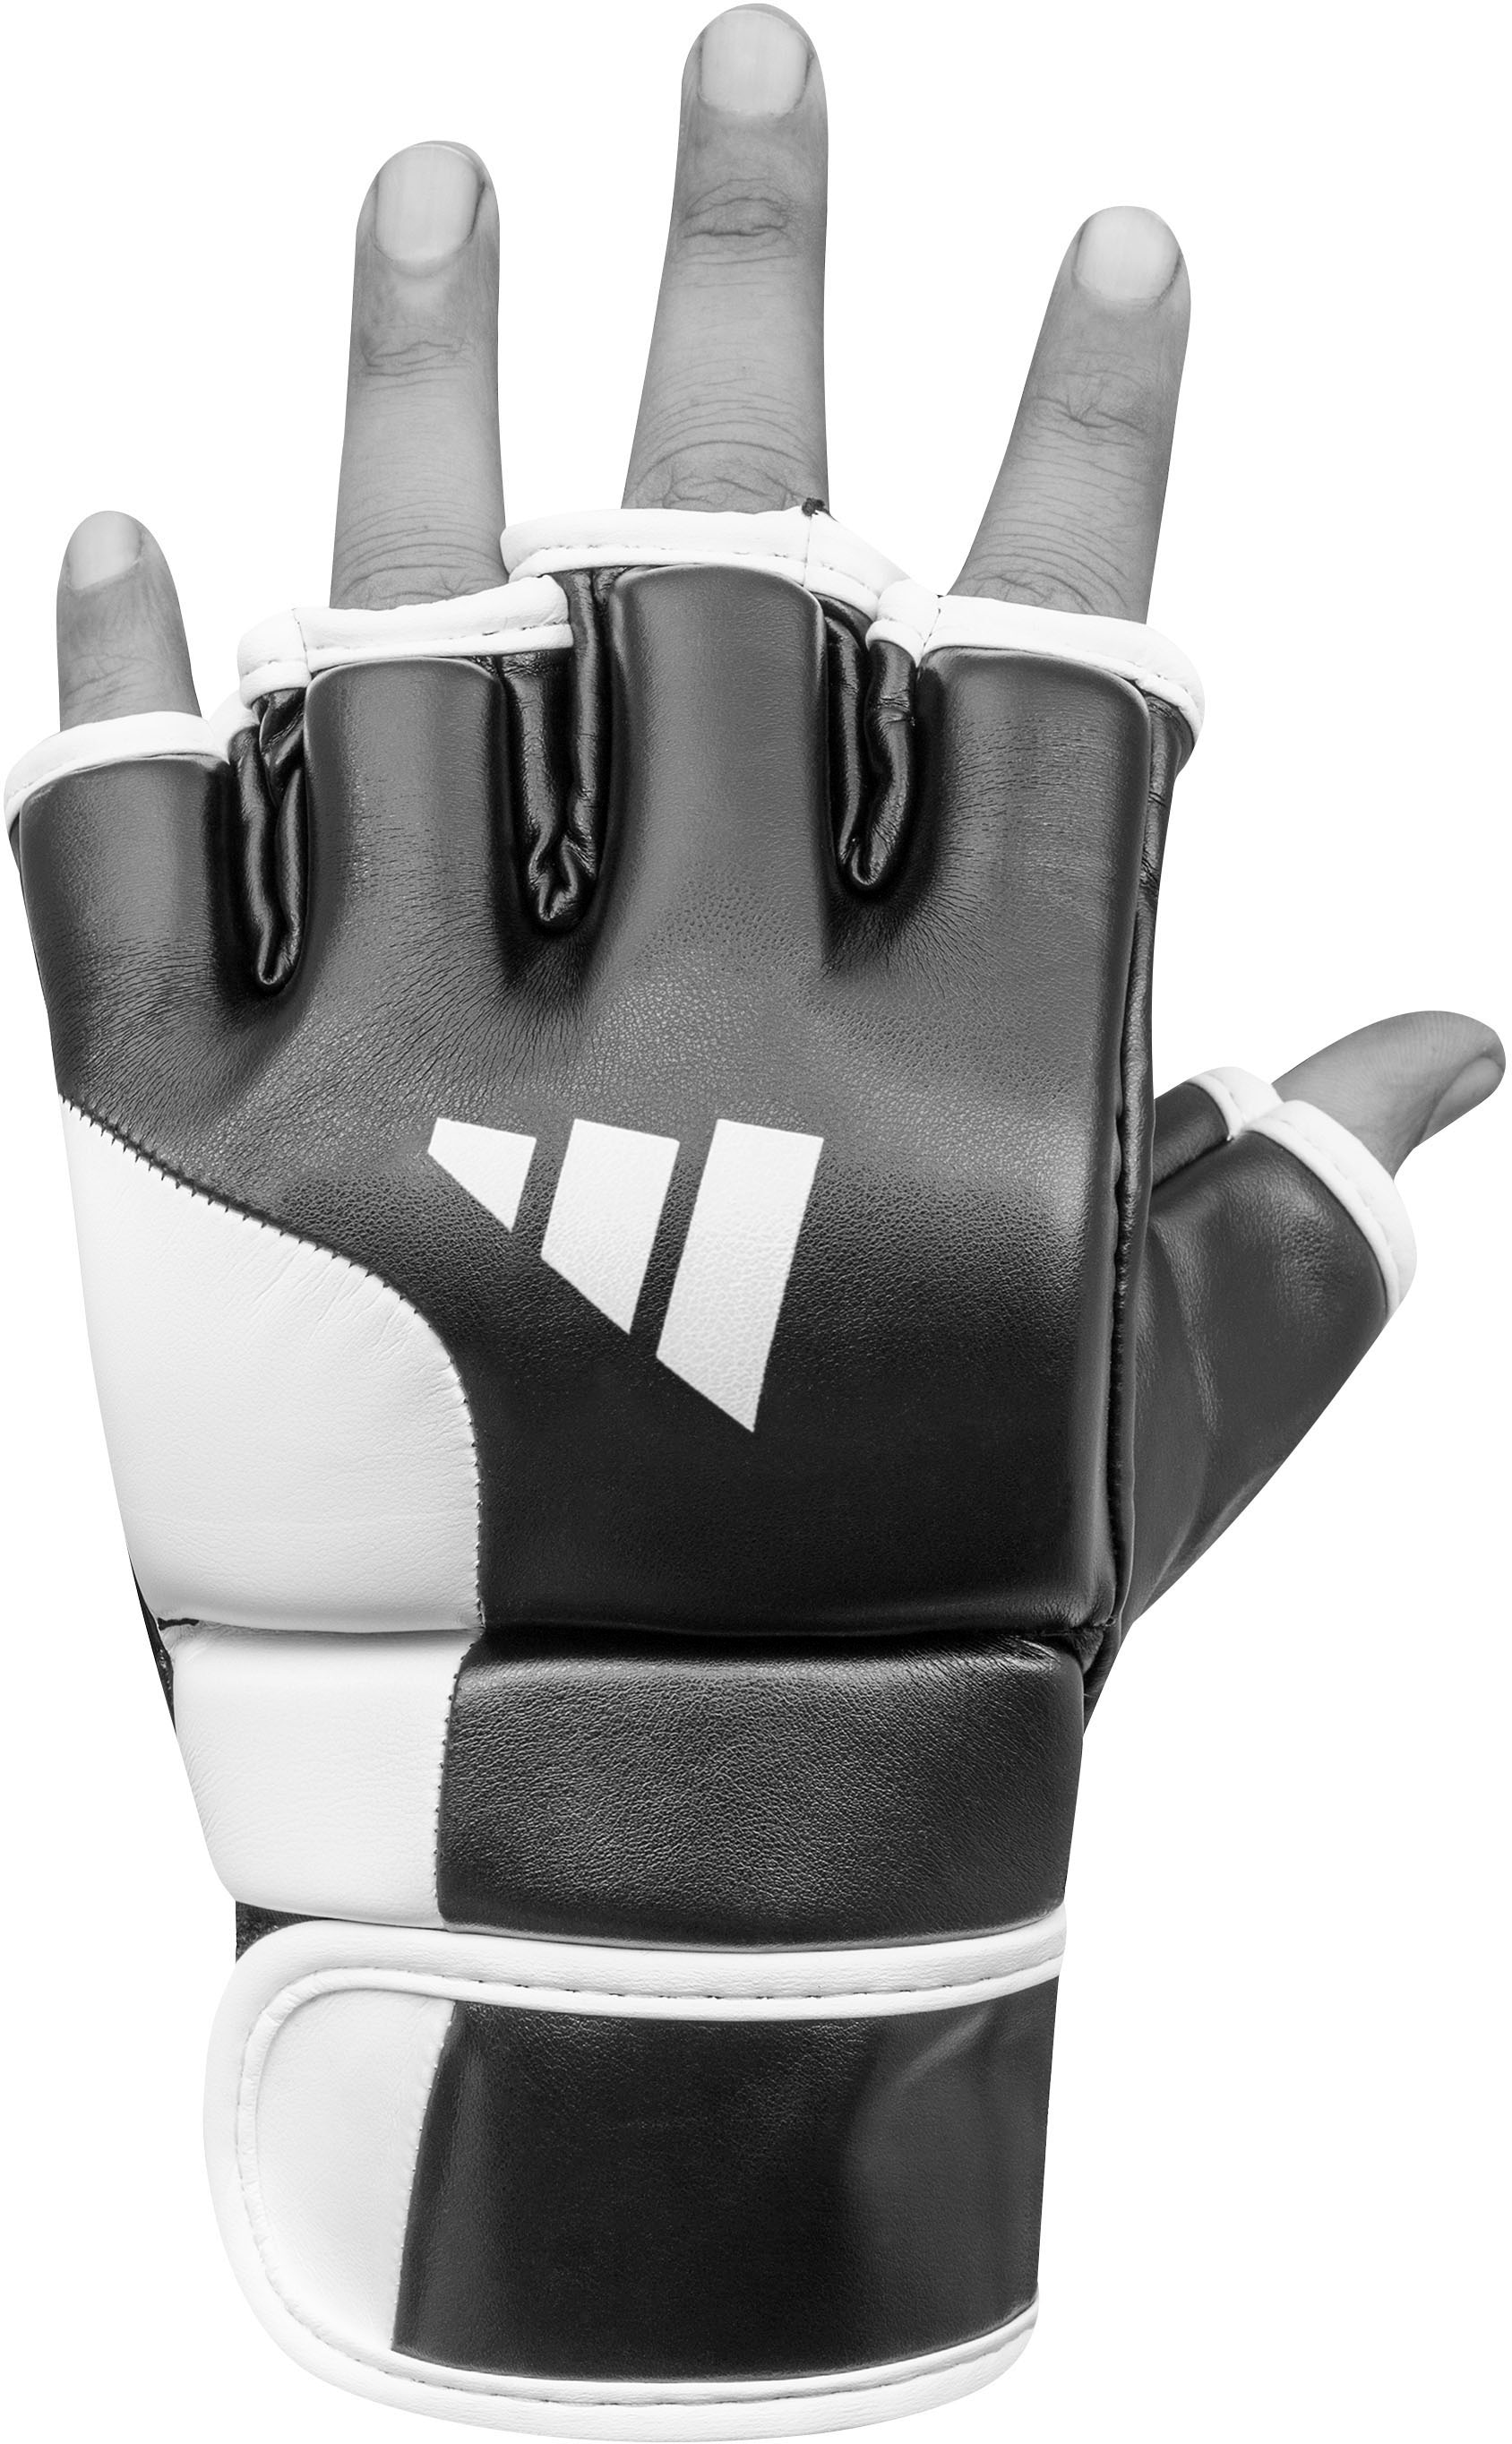 adidas Performance MMA-Handschuhe »Speed Tilt G250«